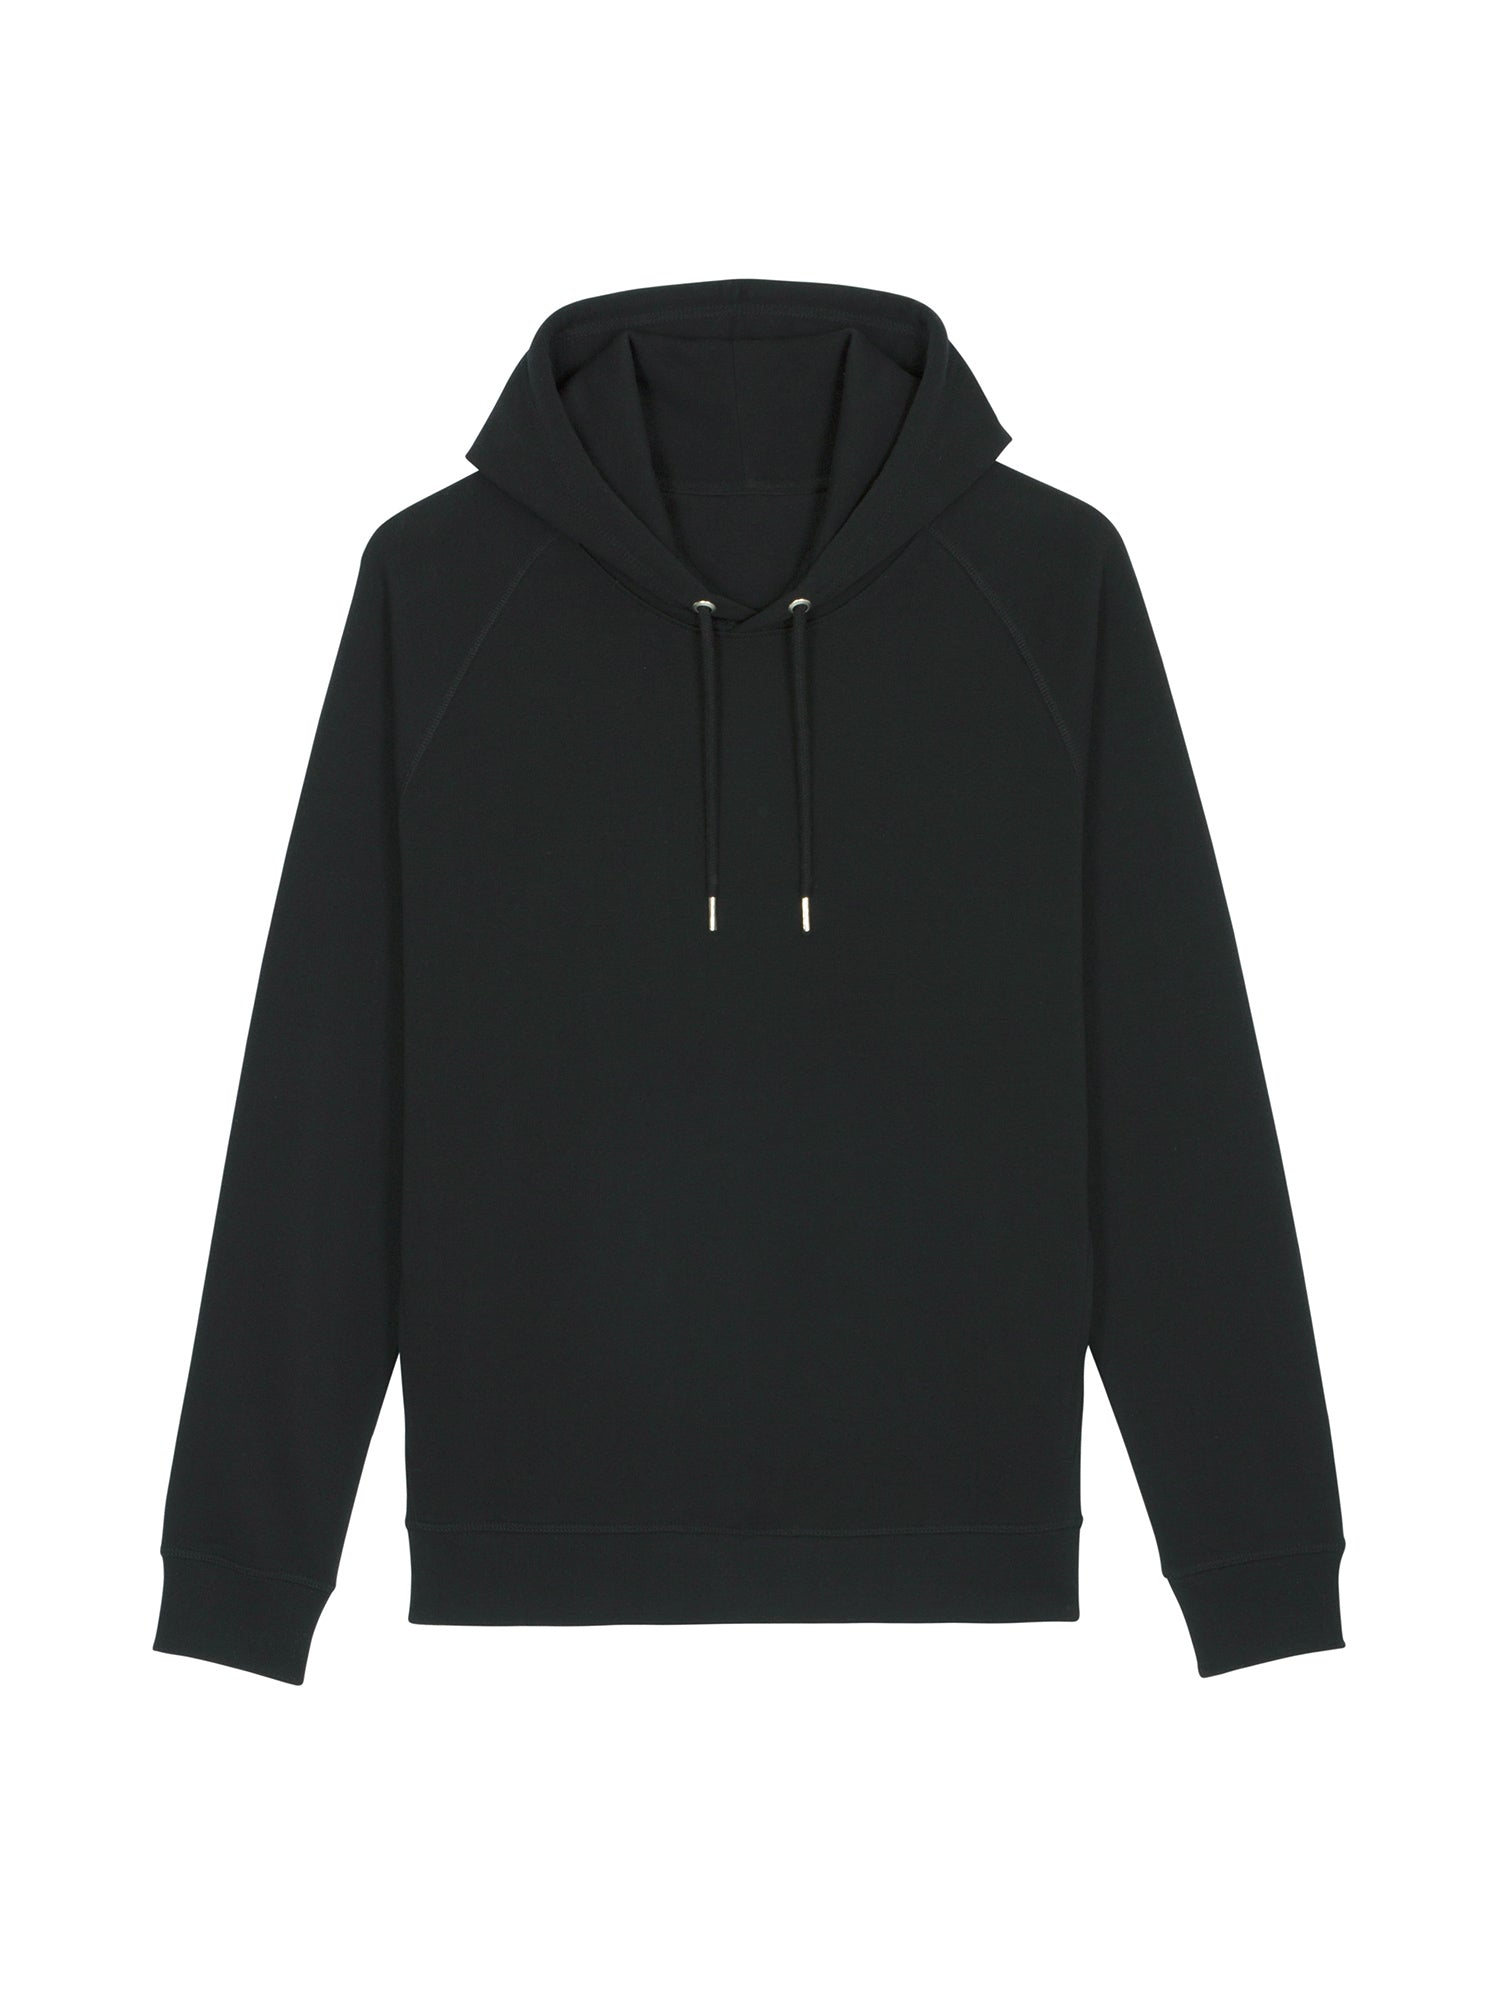 stanley stella unisex organic hoodie stsu824 portait black front flat lay